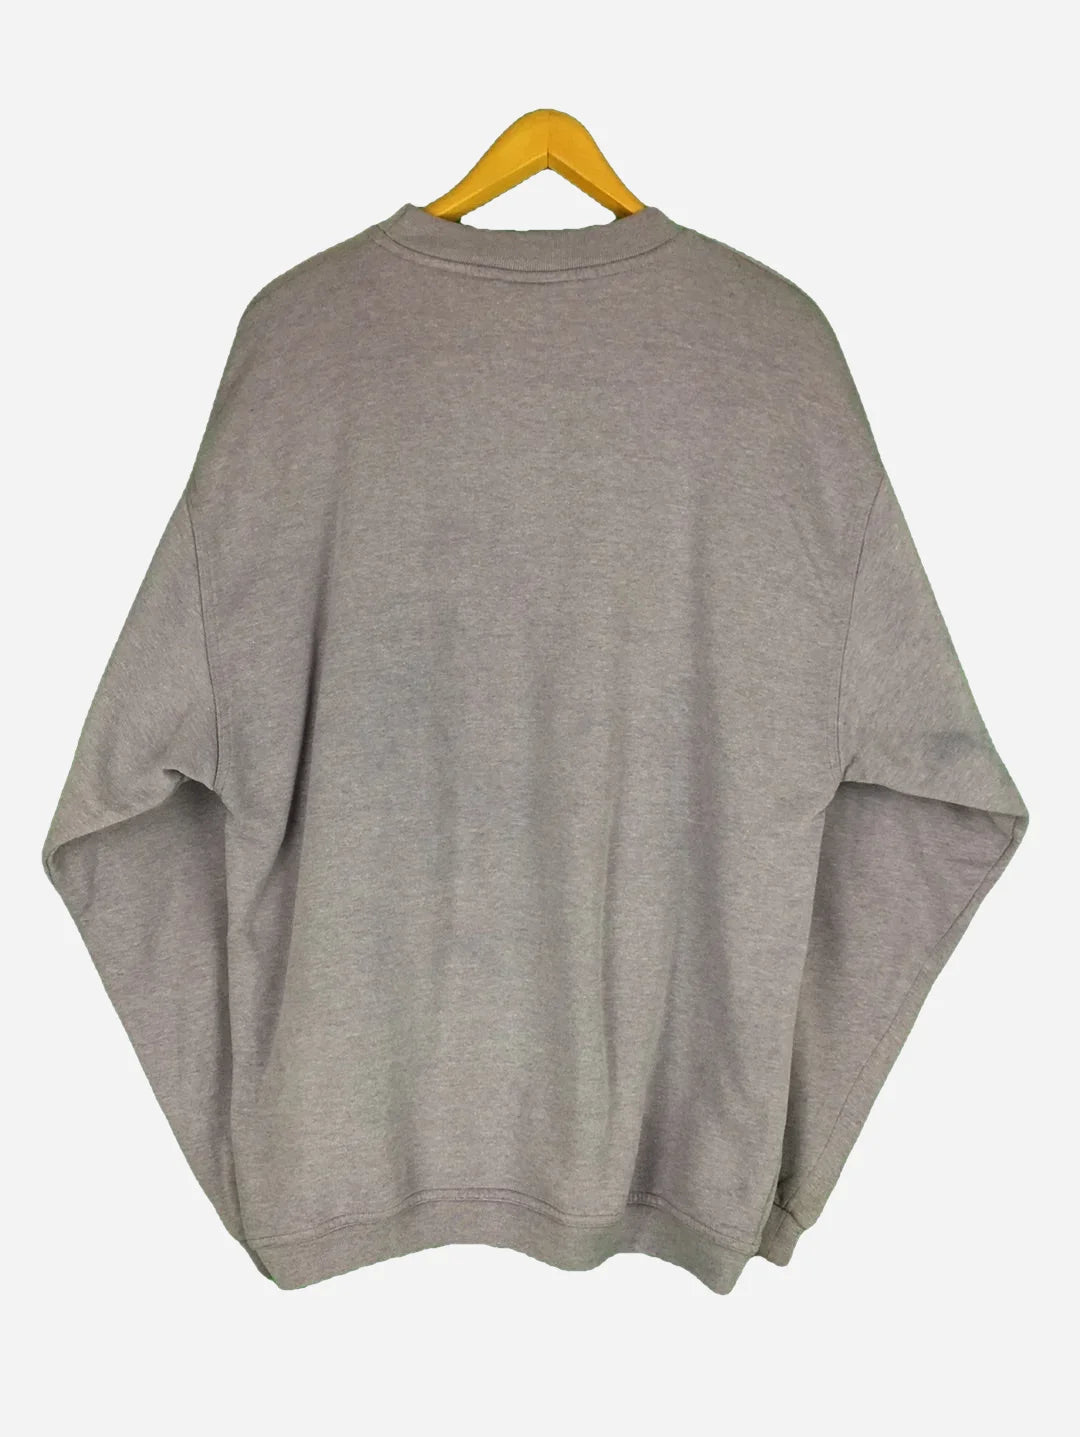 Spirit of Ocean Sweater (XL)